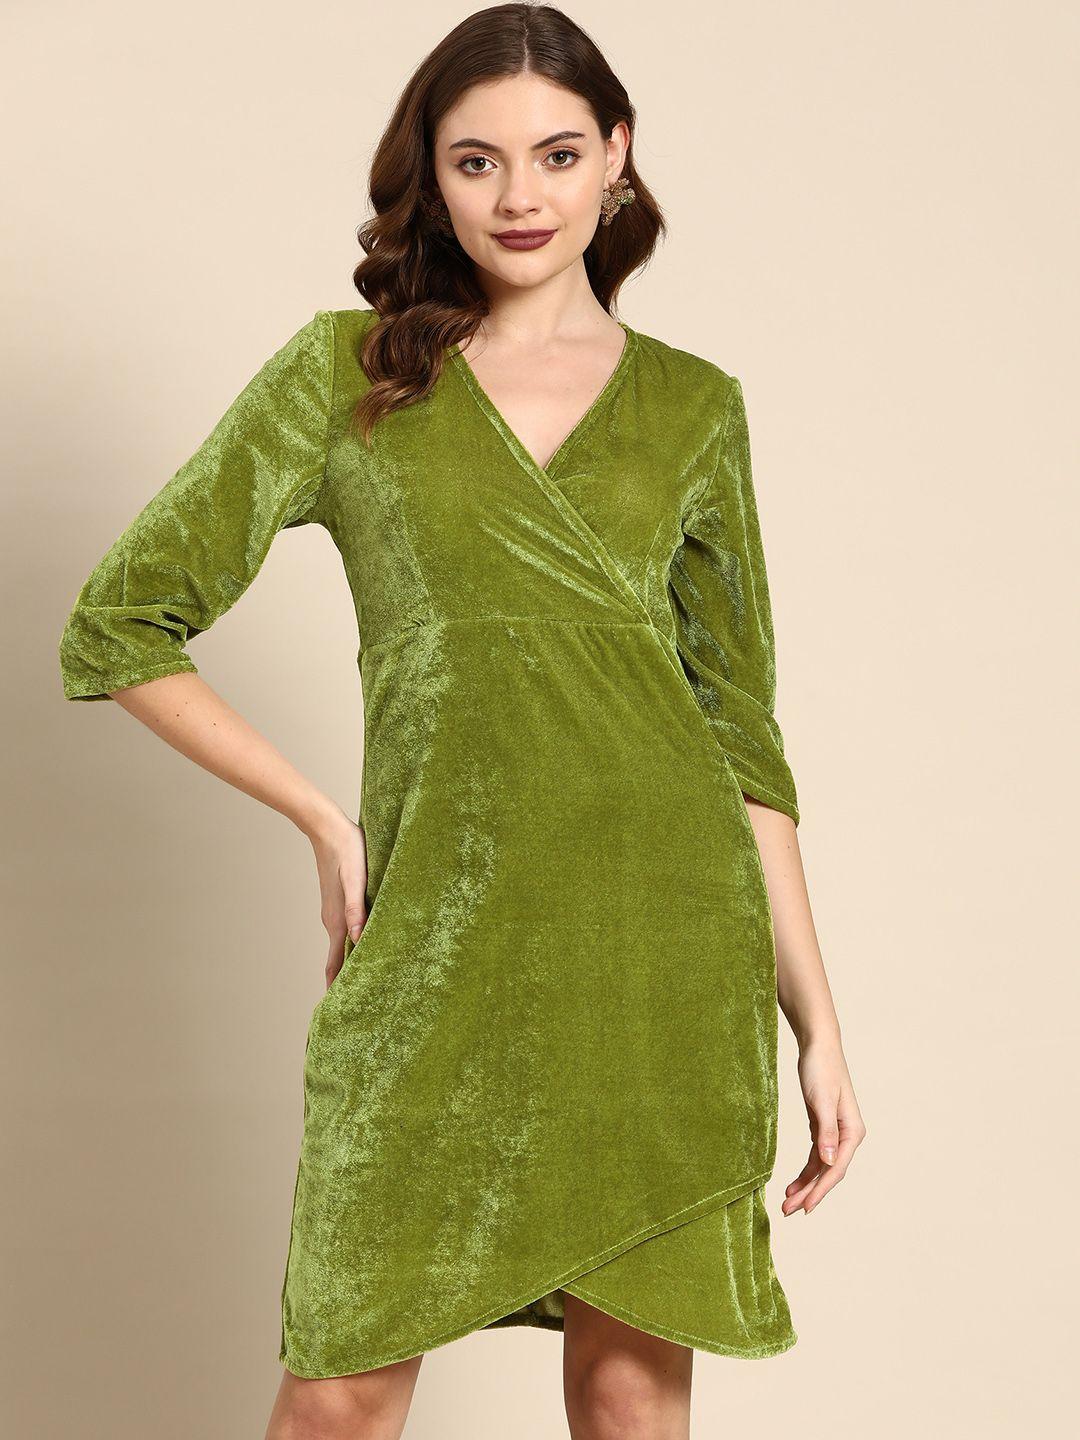 dodo & moa green sheath dress